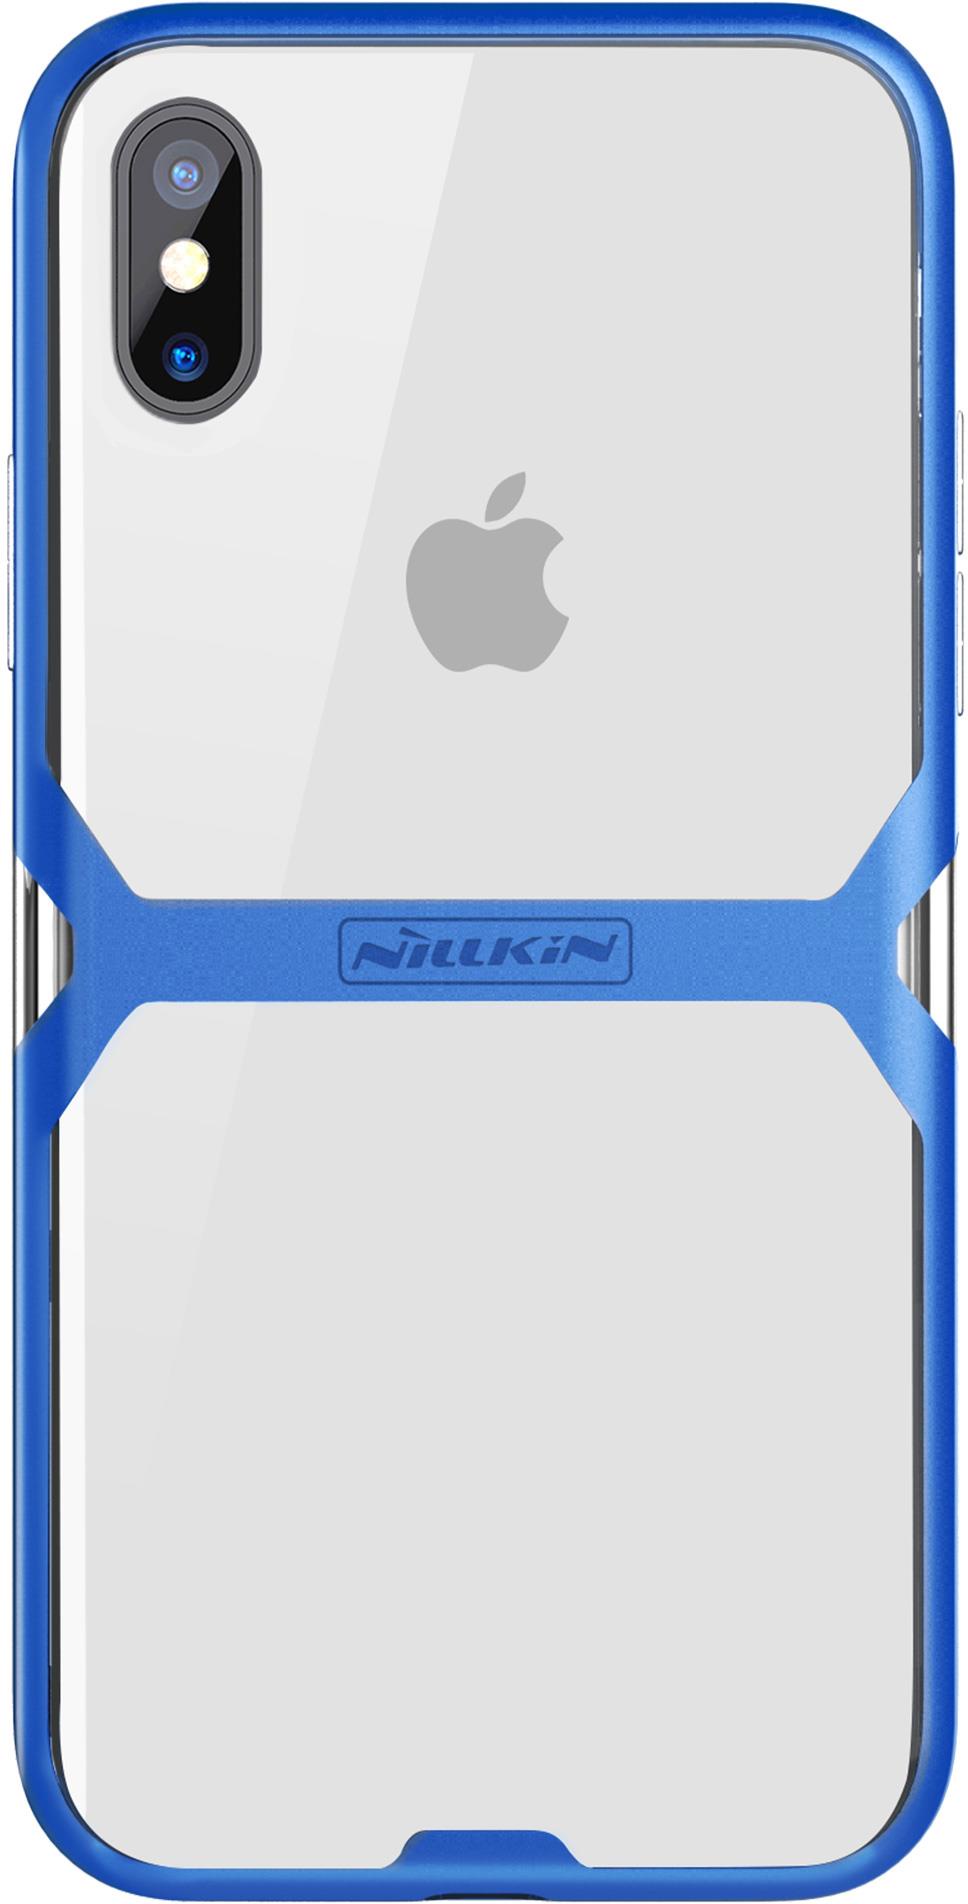 Чехол для сотового телефона Nillkin Crystal case, 6902048150126, синий